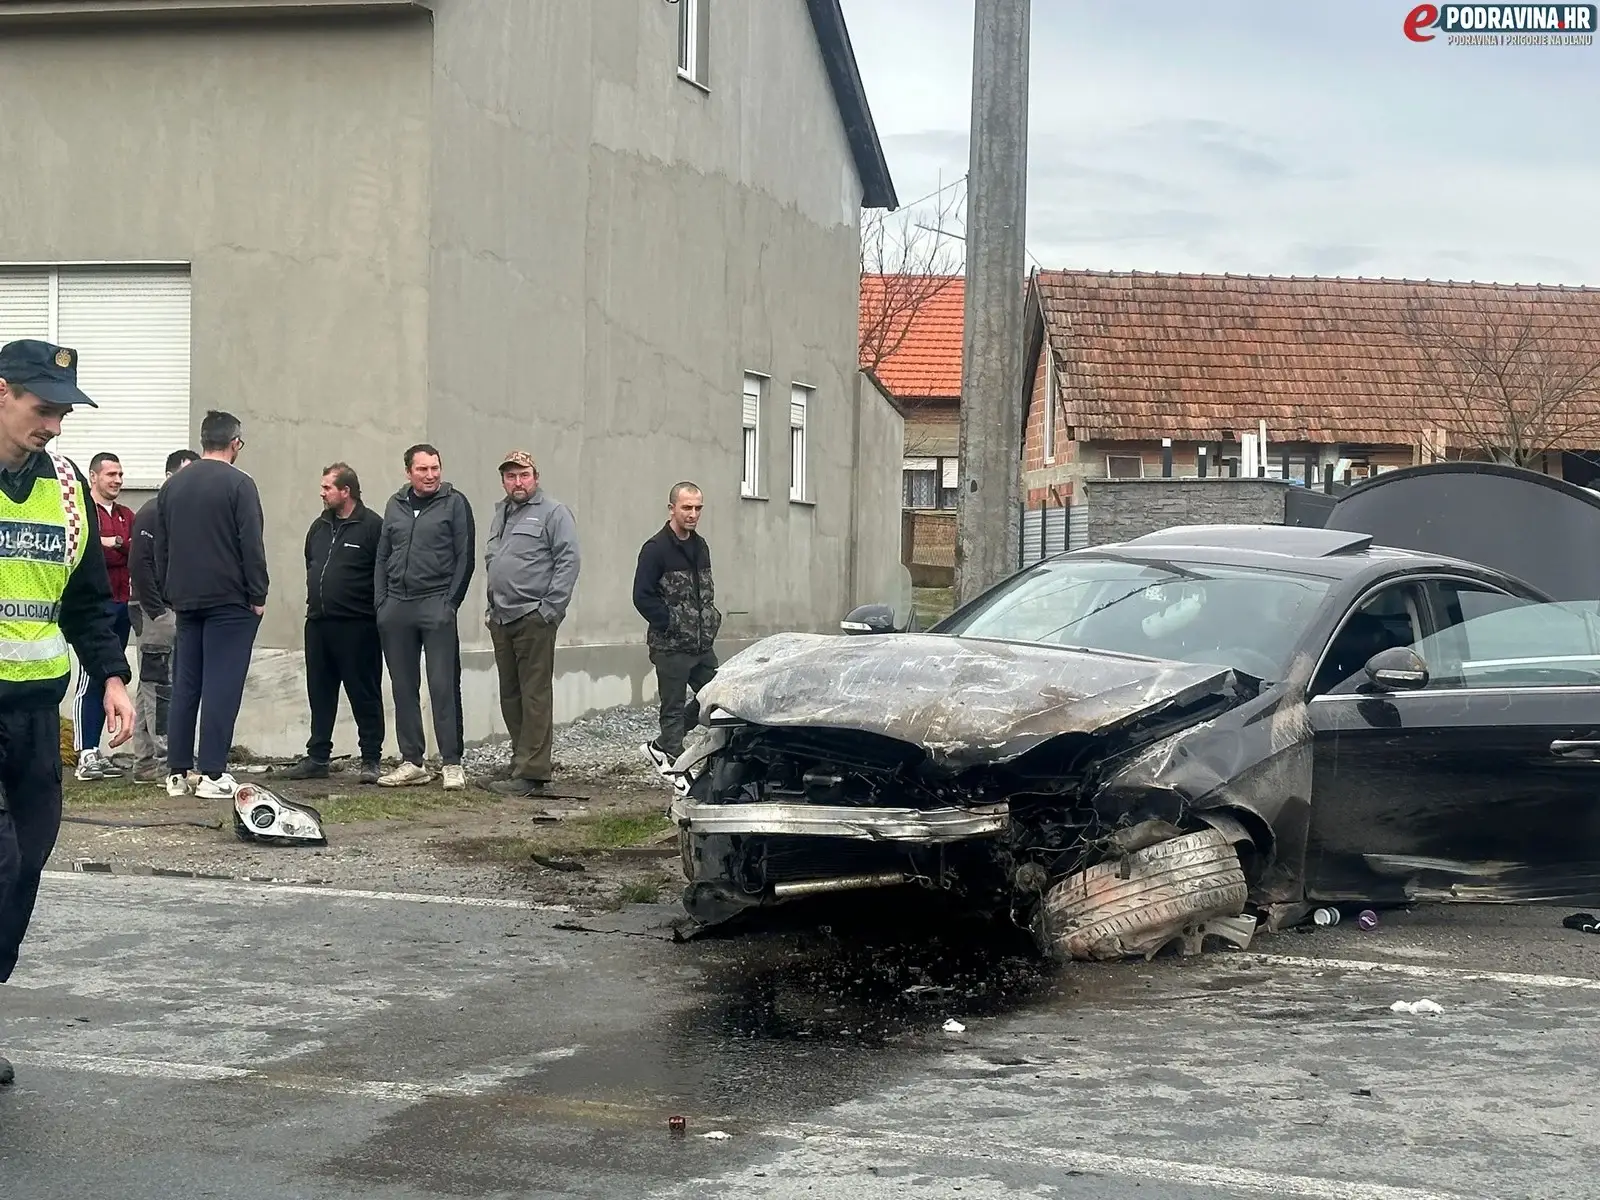 FOTO Mercedesom se zabio u kuću u Podravini: 'Zidovi kuće su popucali od siline udara...'